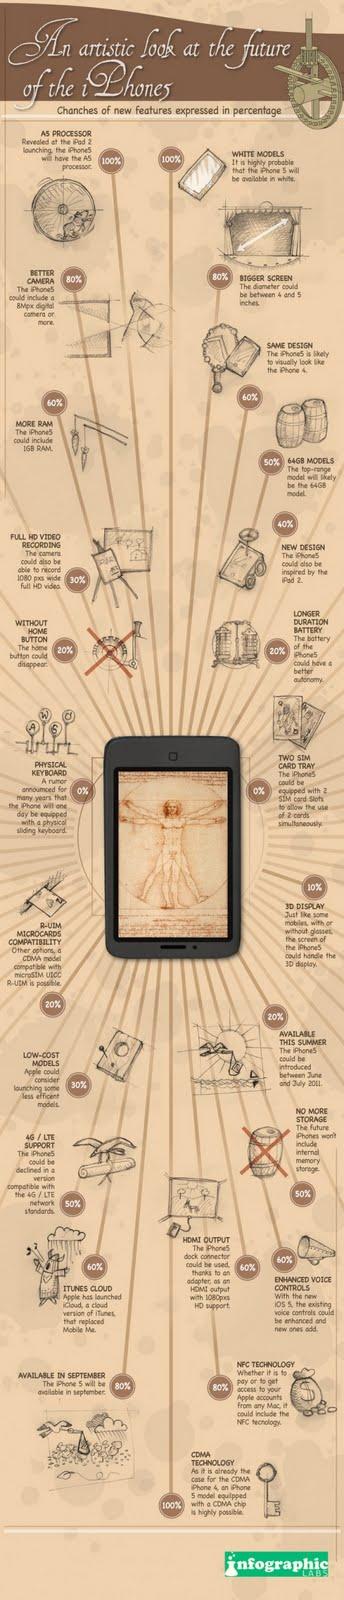 iPhone 5 : infographie à la Léonard de Vinci